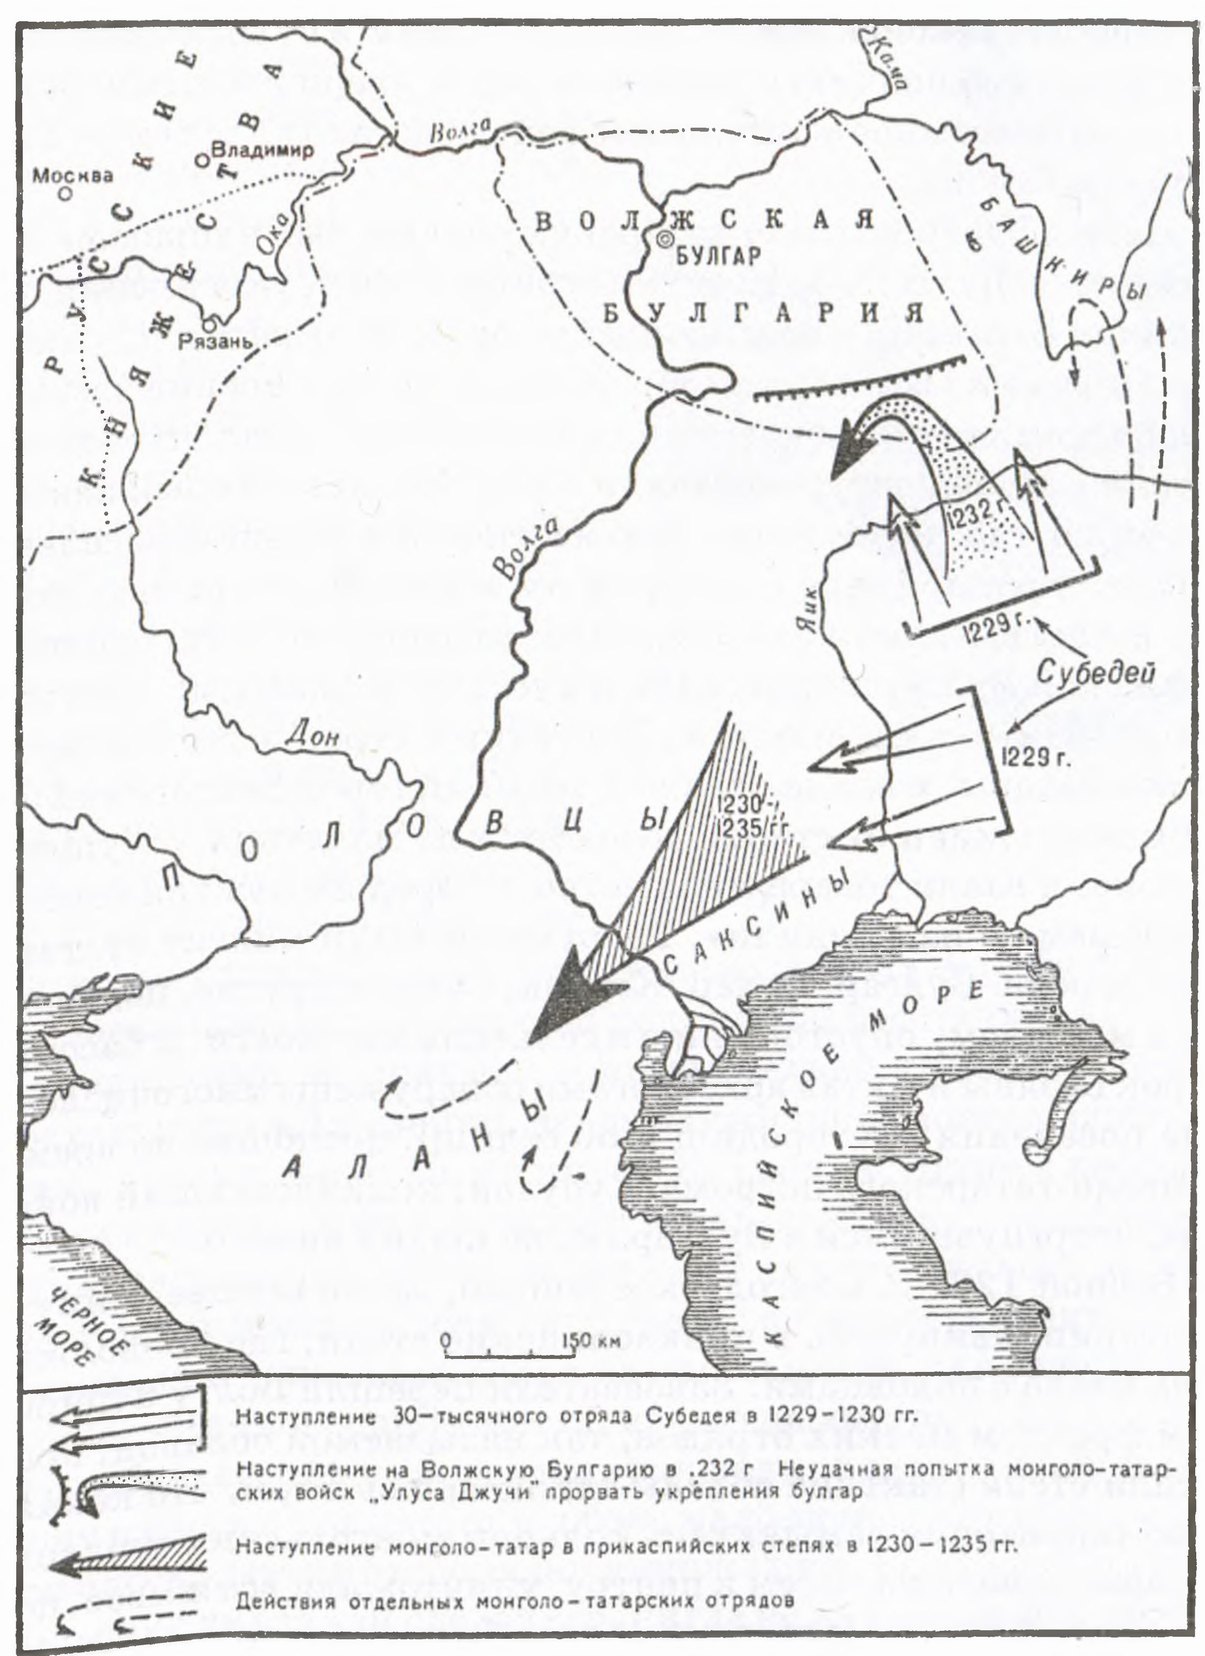 Монголо-татарское наступление на Юго-Восточную Европу в 1229—1235 гг